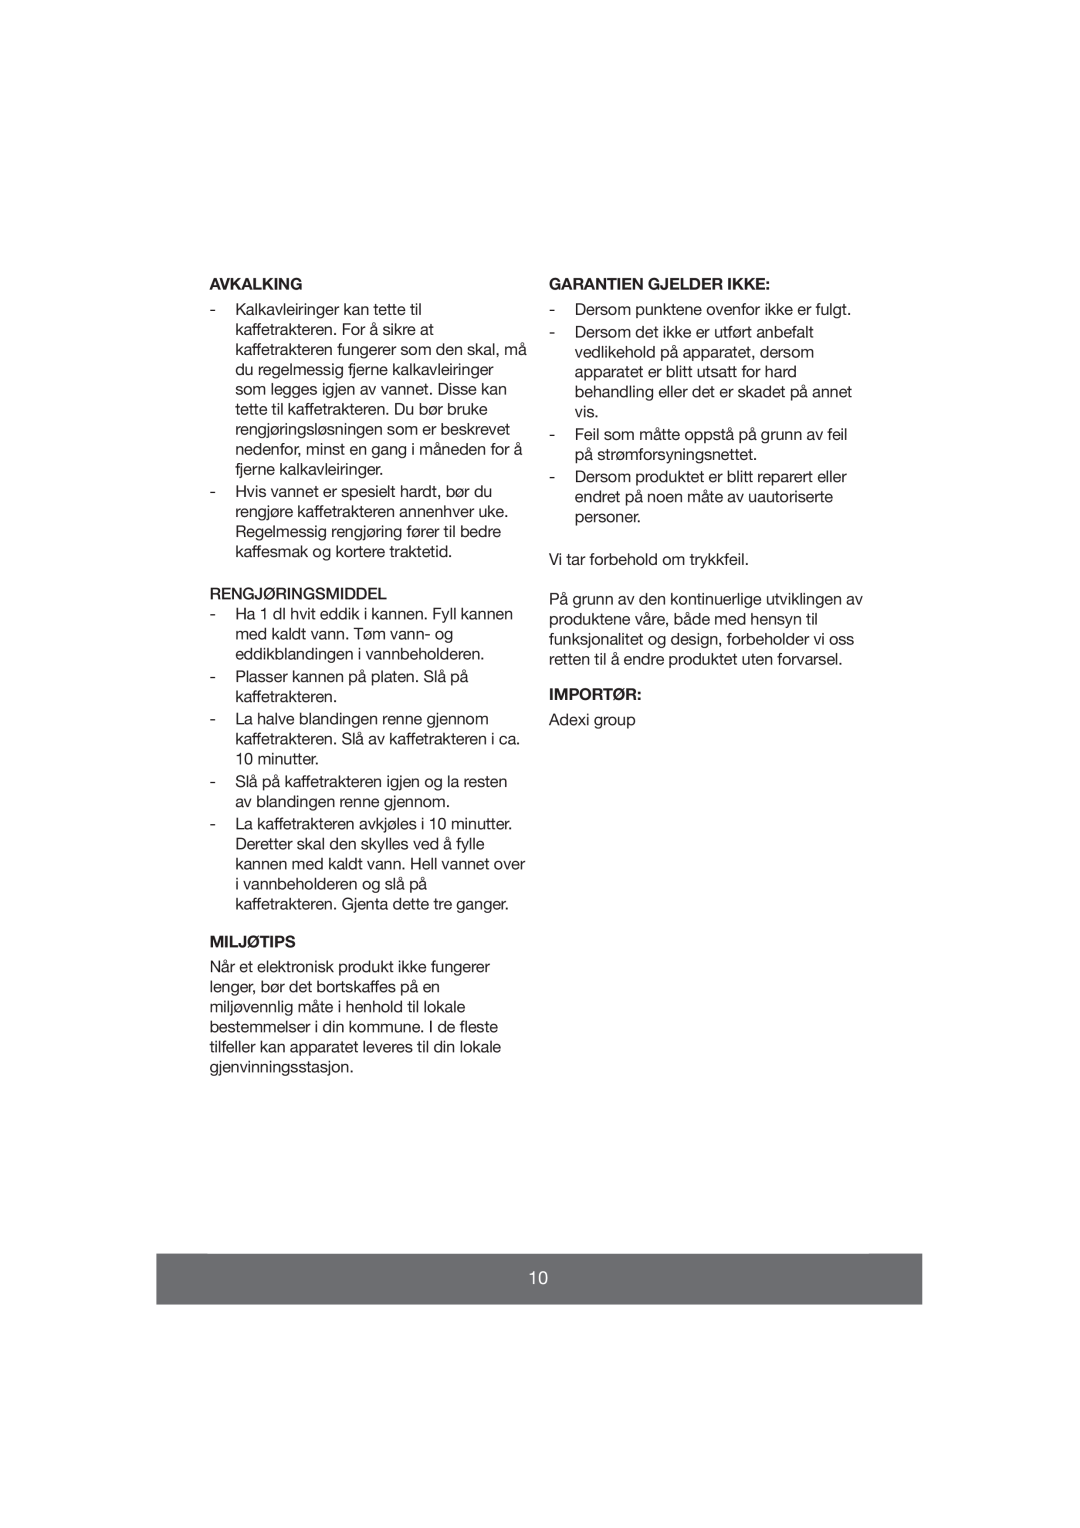 Butler 645-071 manual Avkalking, Garantien Gjelder Ikke, Miljøtips, Importør 